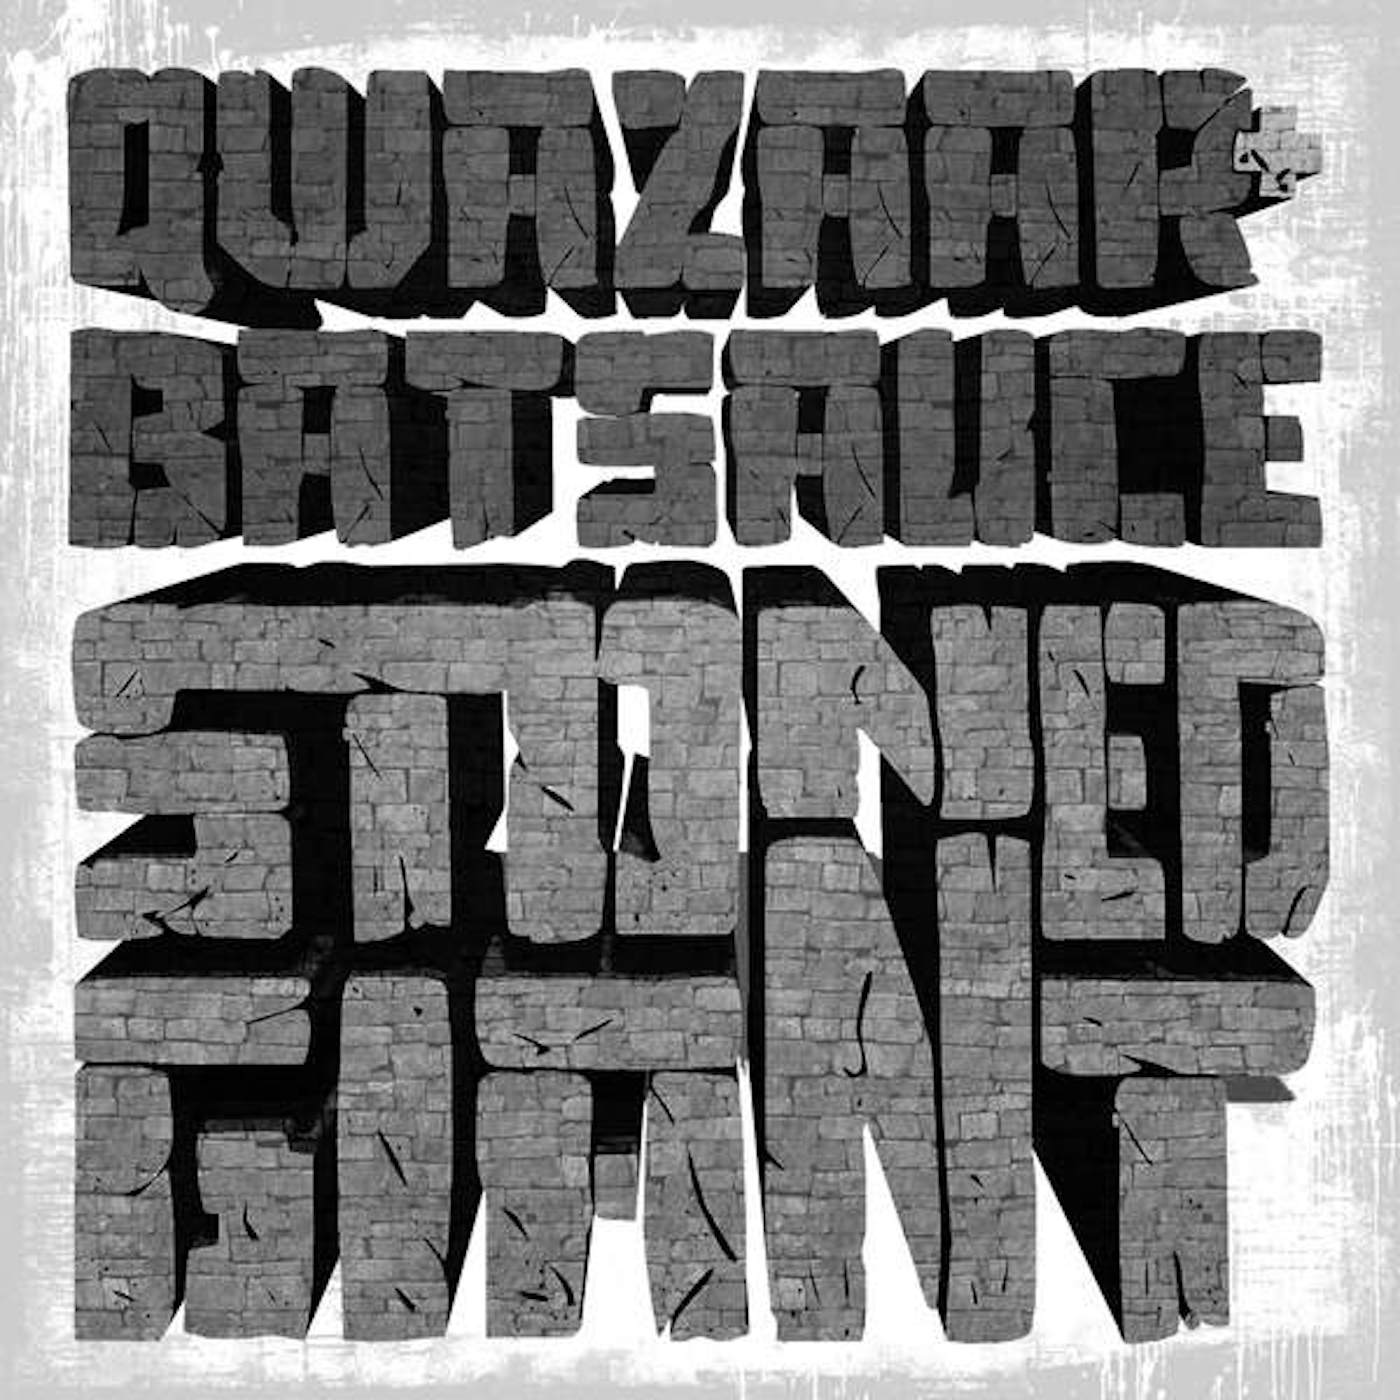 Qwazaar, Batsauce STONED GIANT (MARBLED STONE GREY VINYL) Vinyl Record